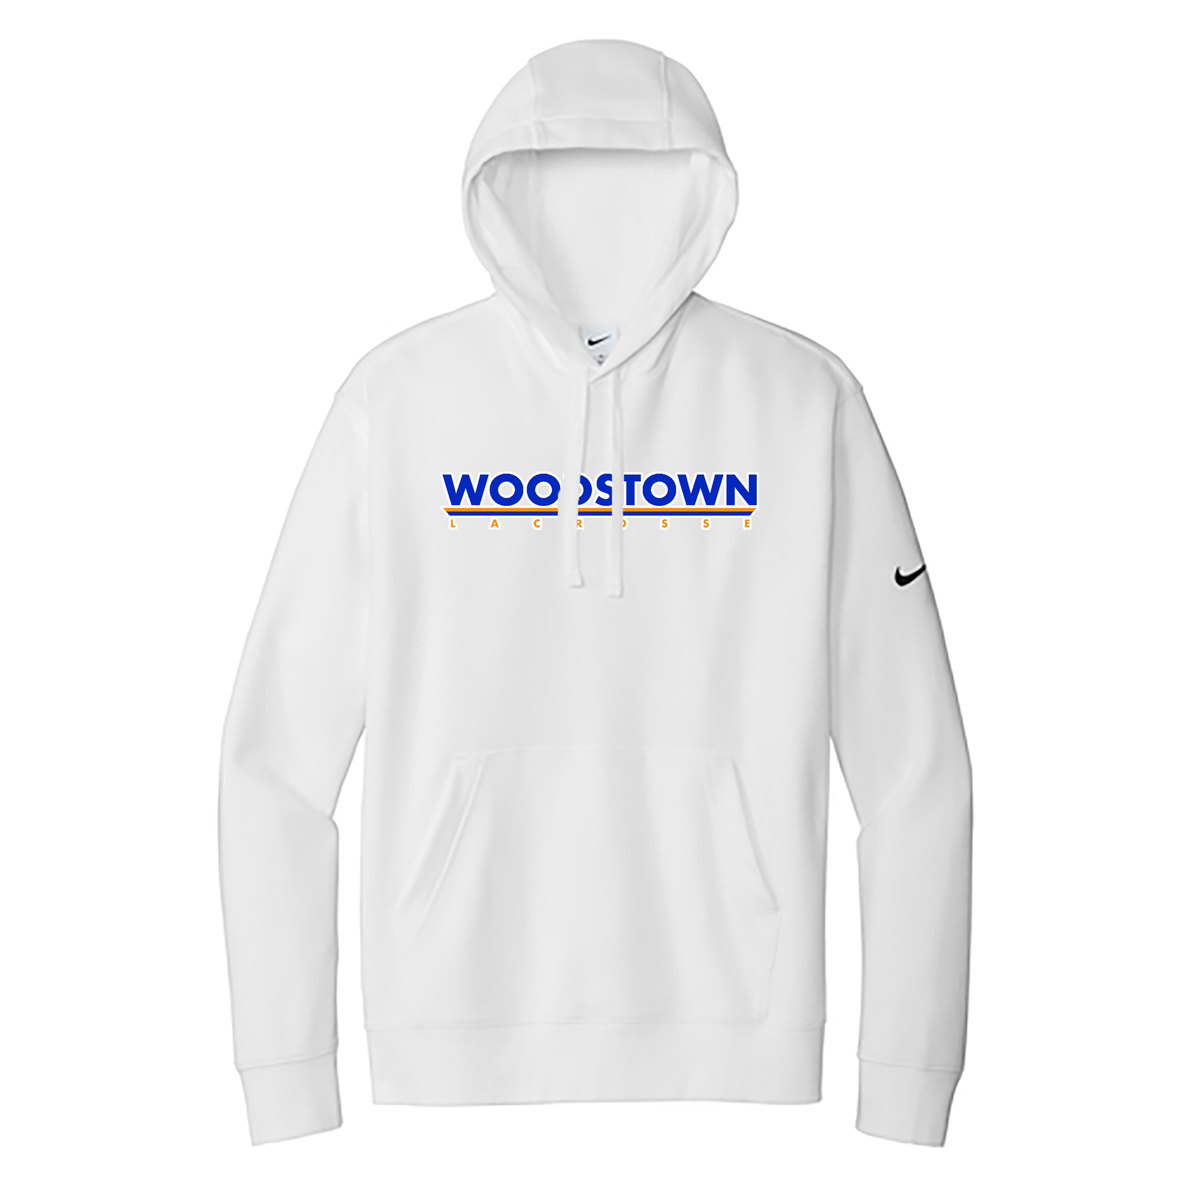 Woodstown HS Boys Nike Fleece Swoosh Hoodie